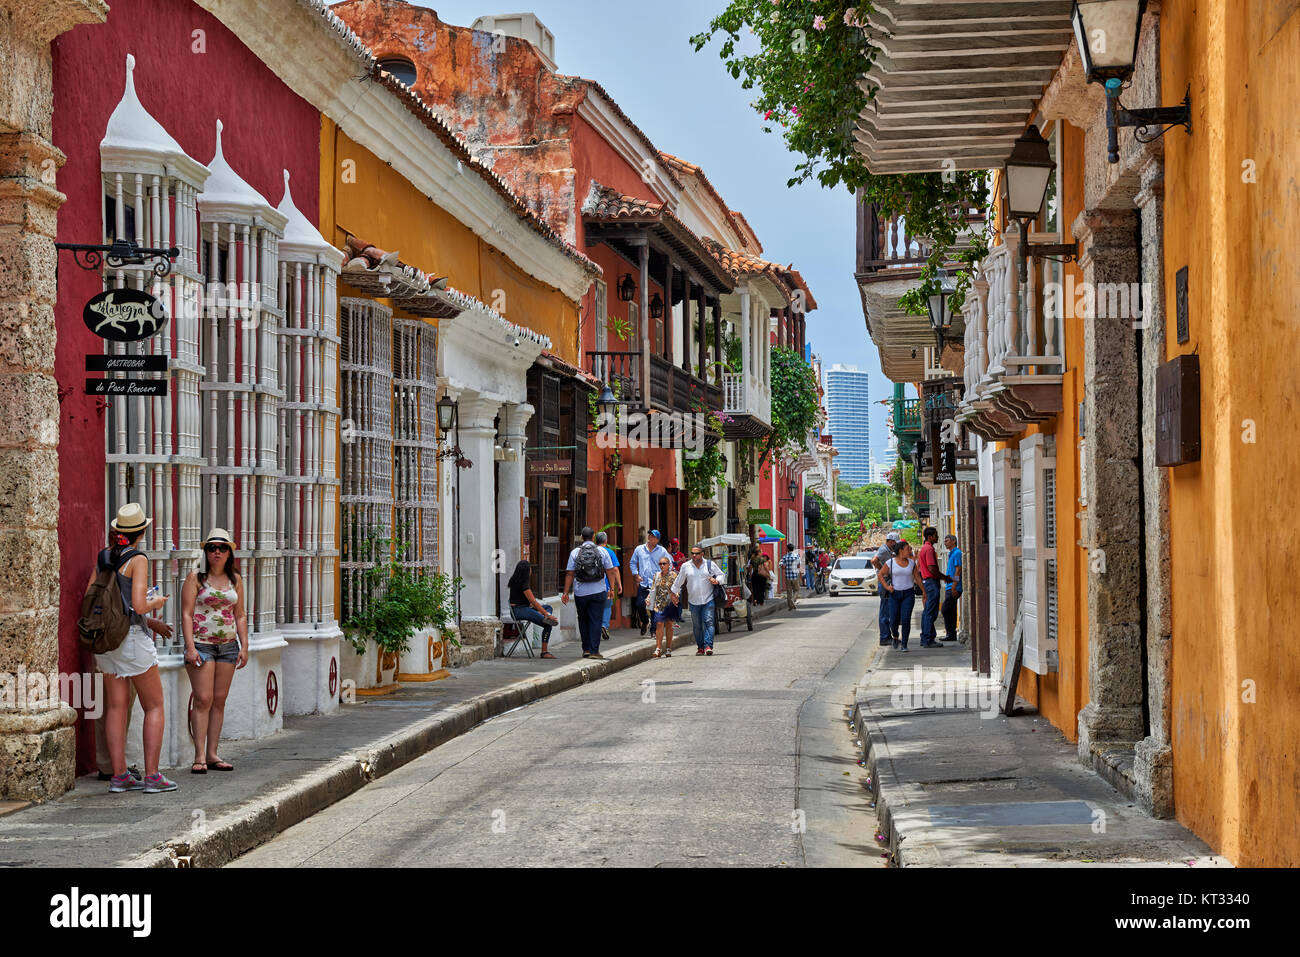 Típico de coloridas fachadas con balcones y flores de casas en Cartagena de Indias, Colombia, Sur America Foto de stock